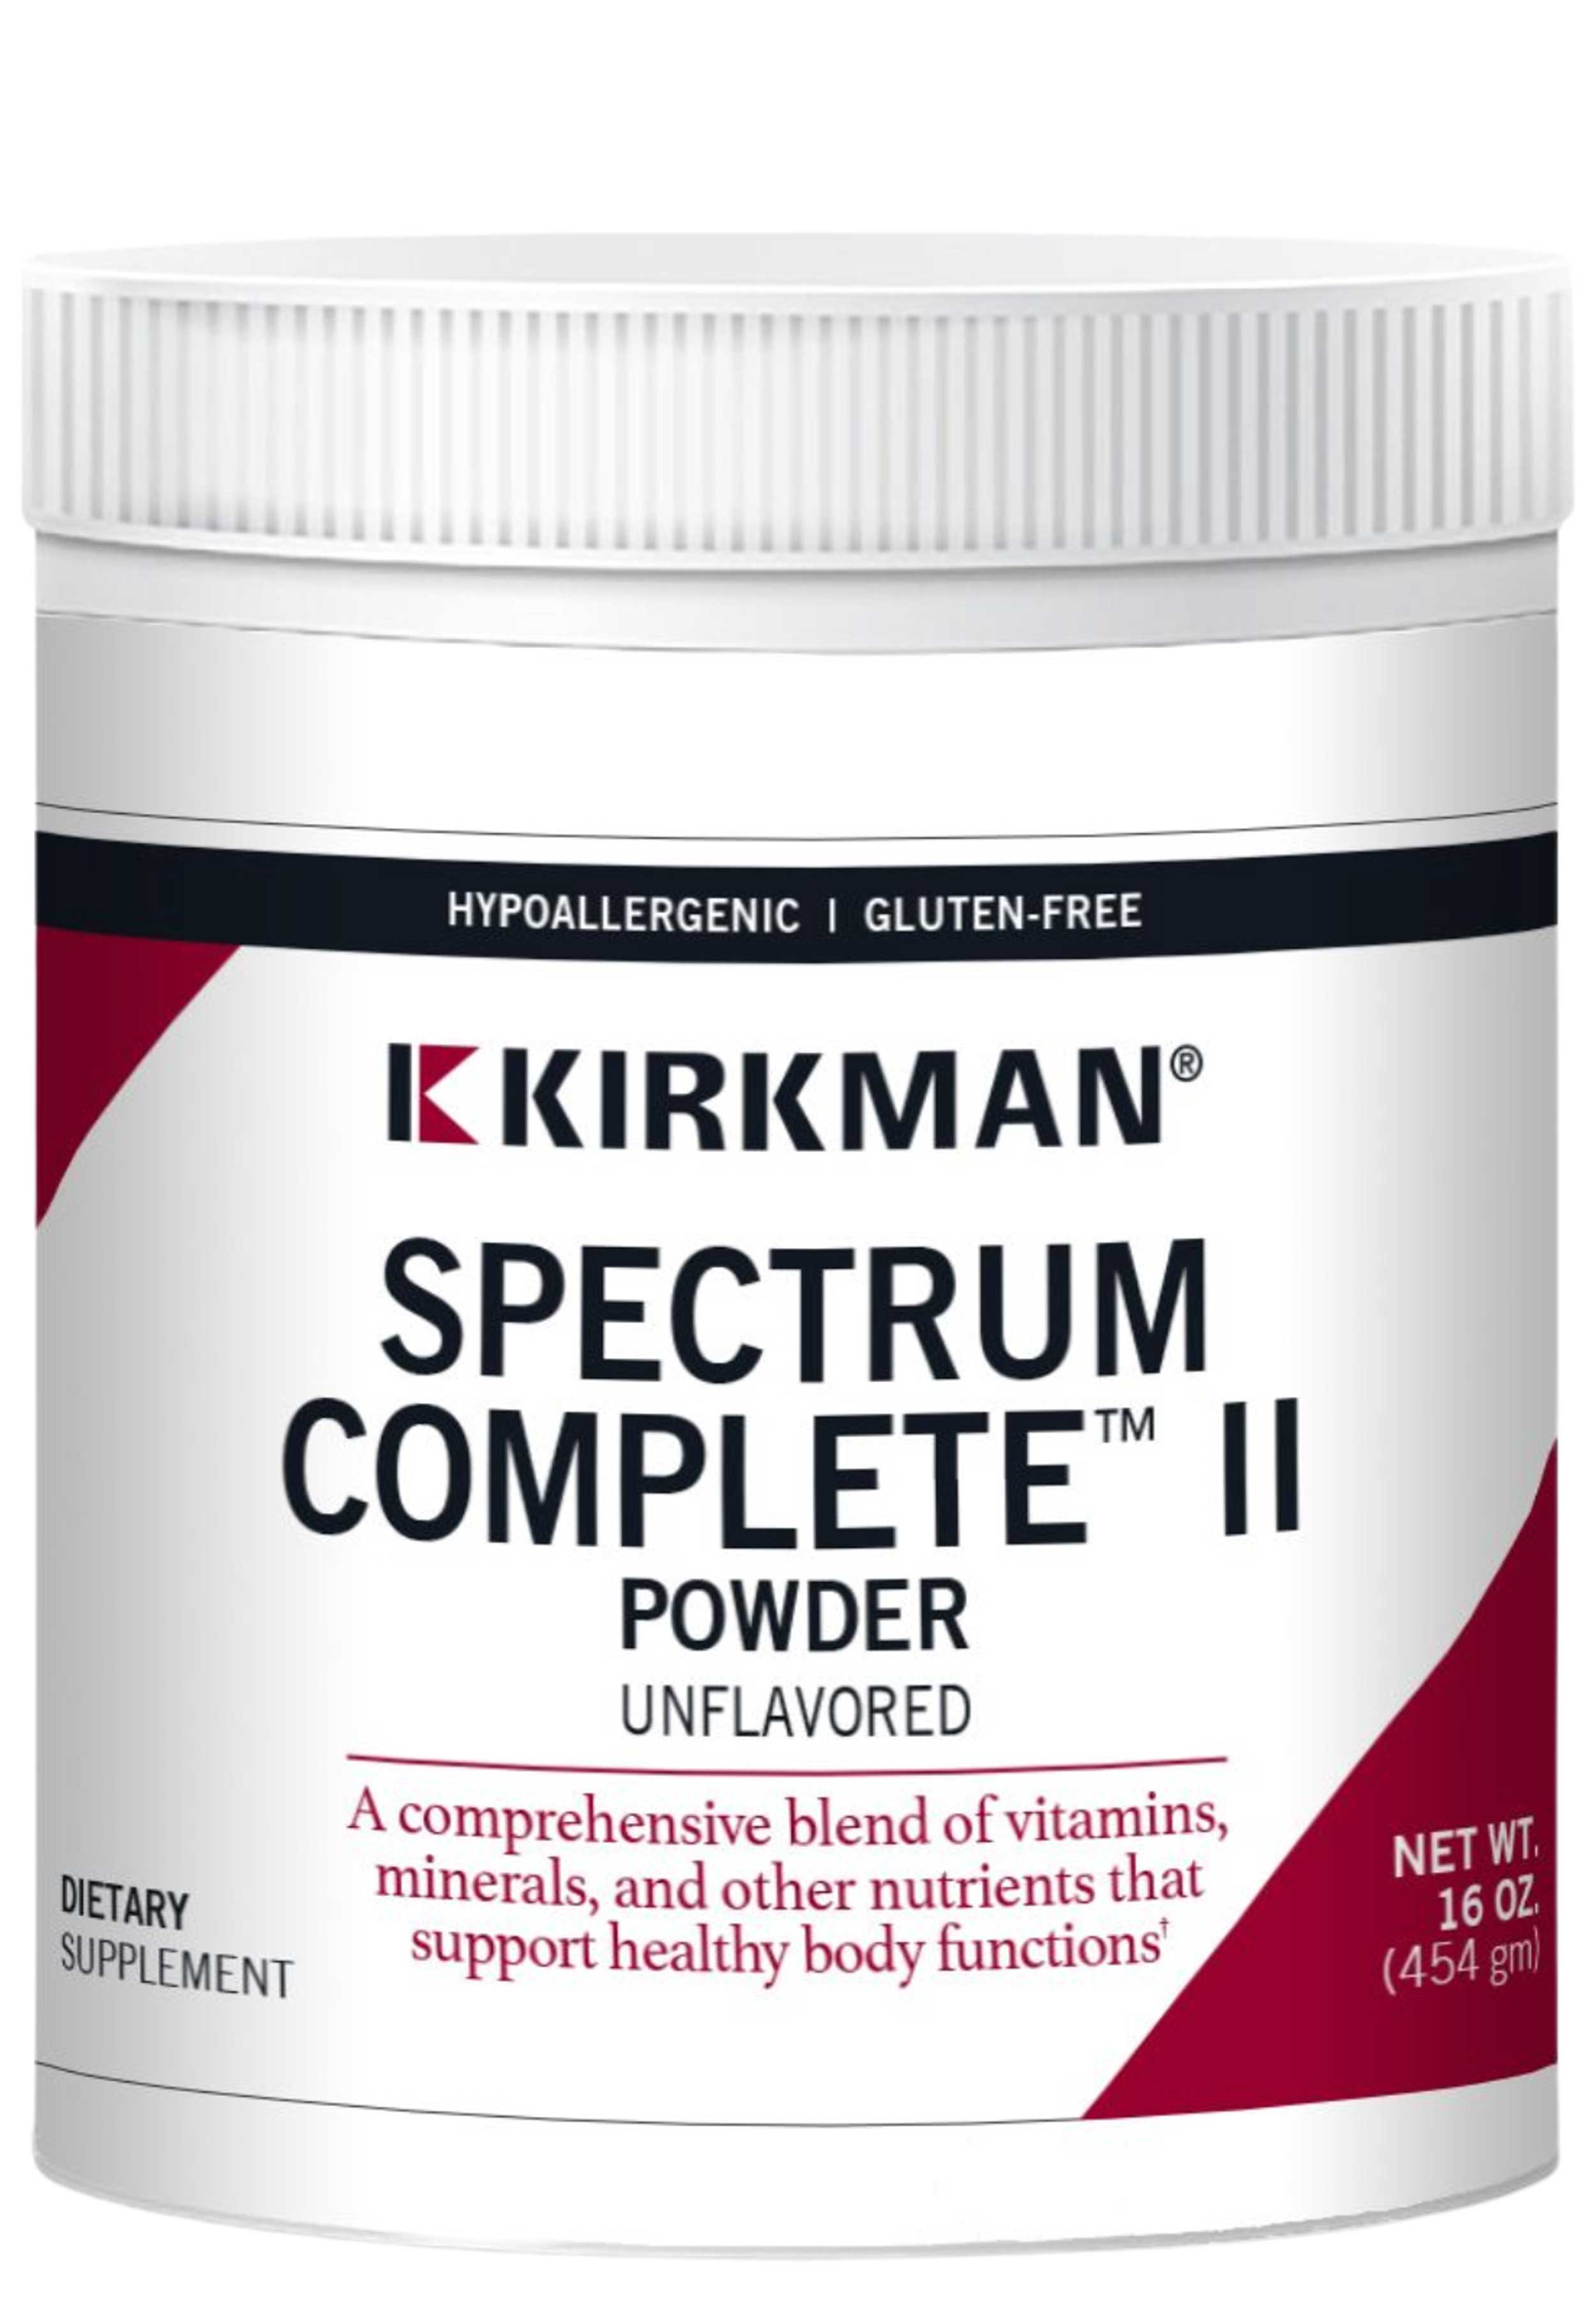 Kirkman Spectrum Complete II Powder